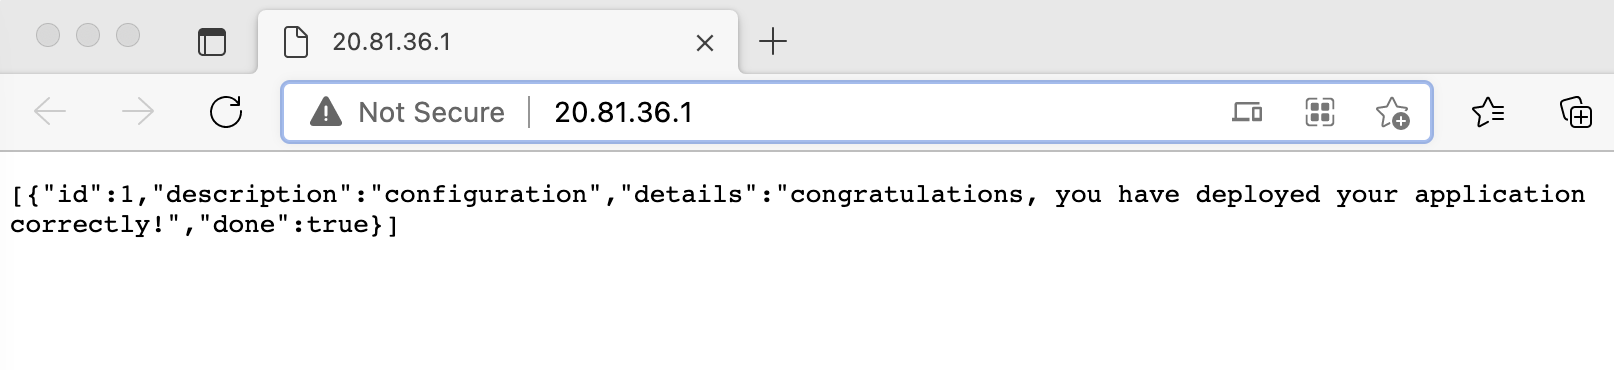 Captura de tela que mostra a saída da solicitação do navegador.